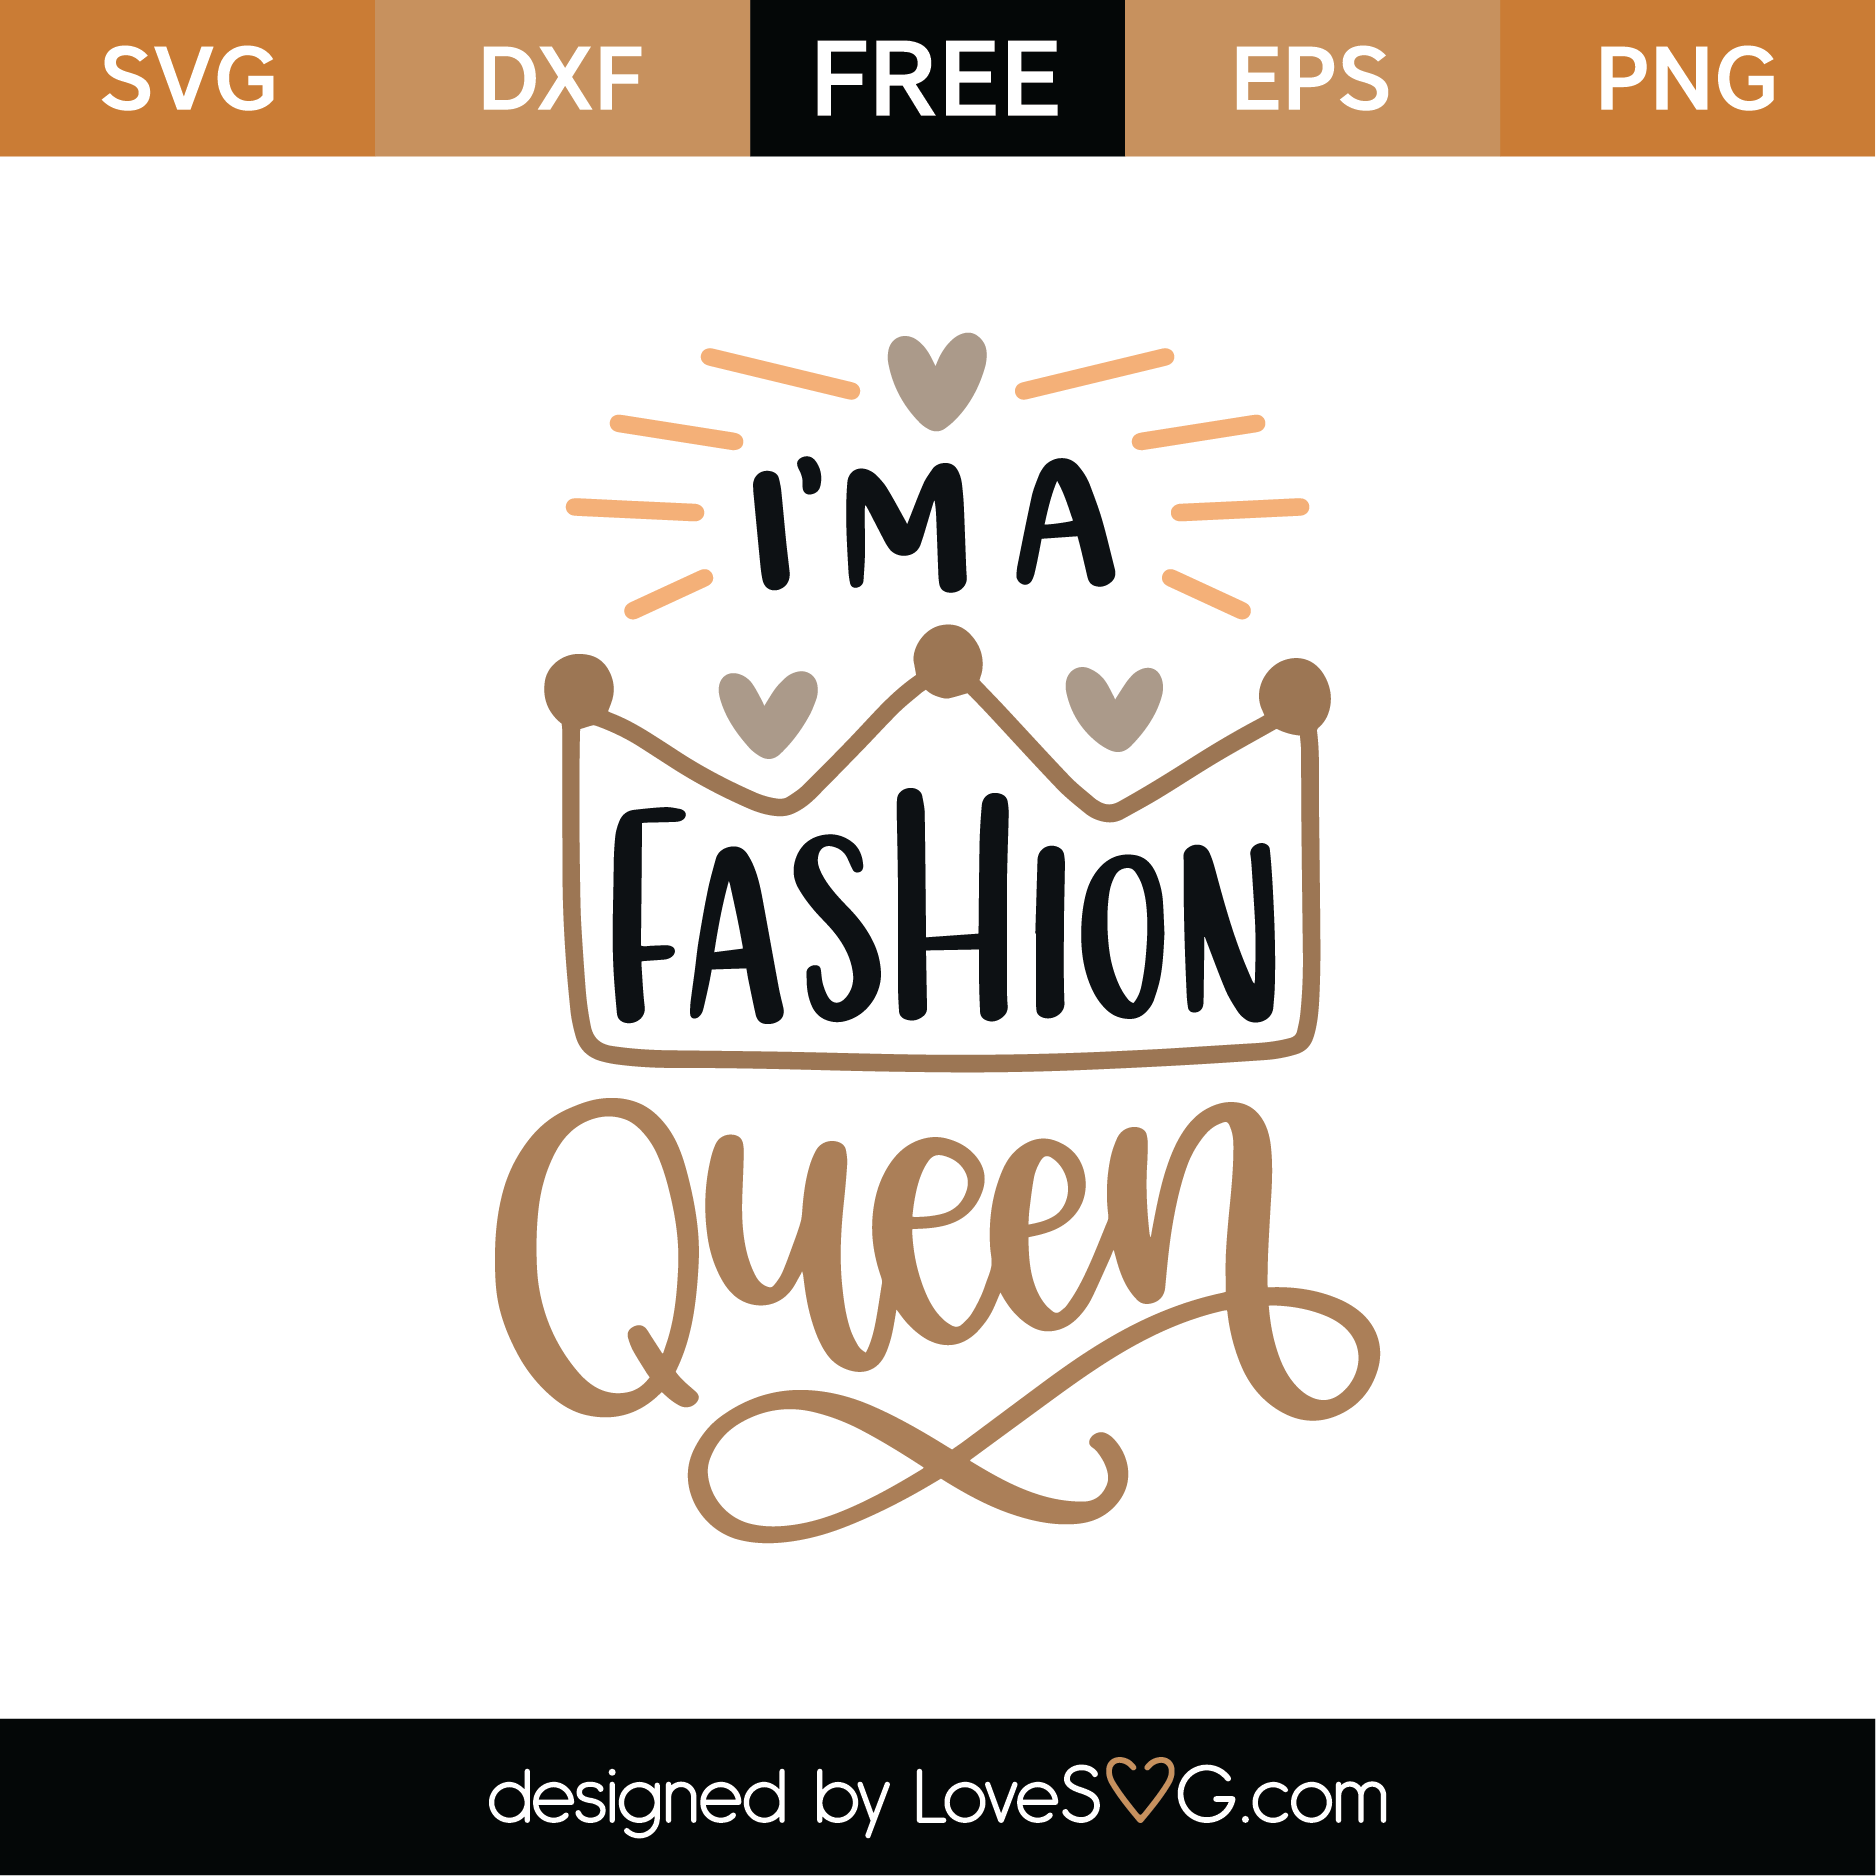 Download Free I'm A Fashion Queen SVG Cut File | Lovesvg.com